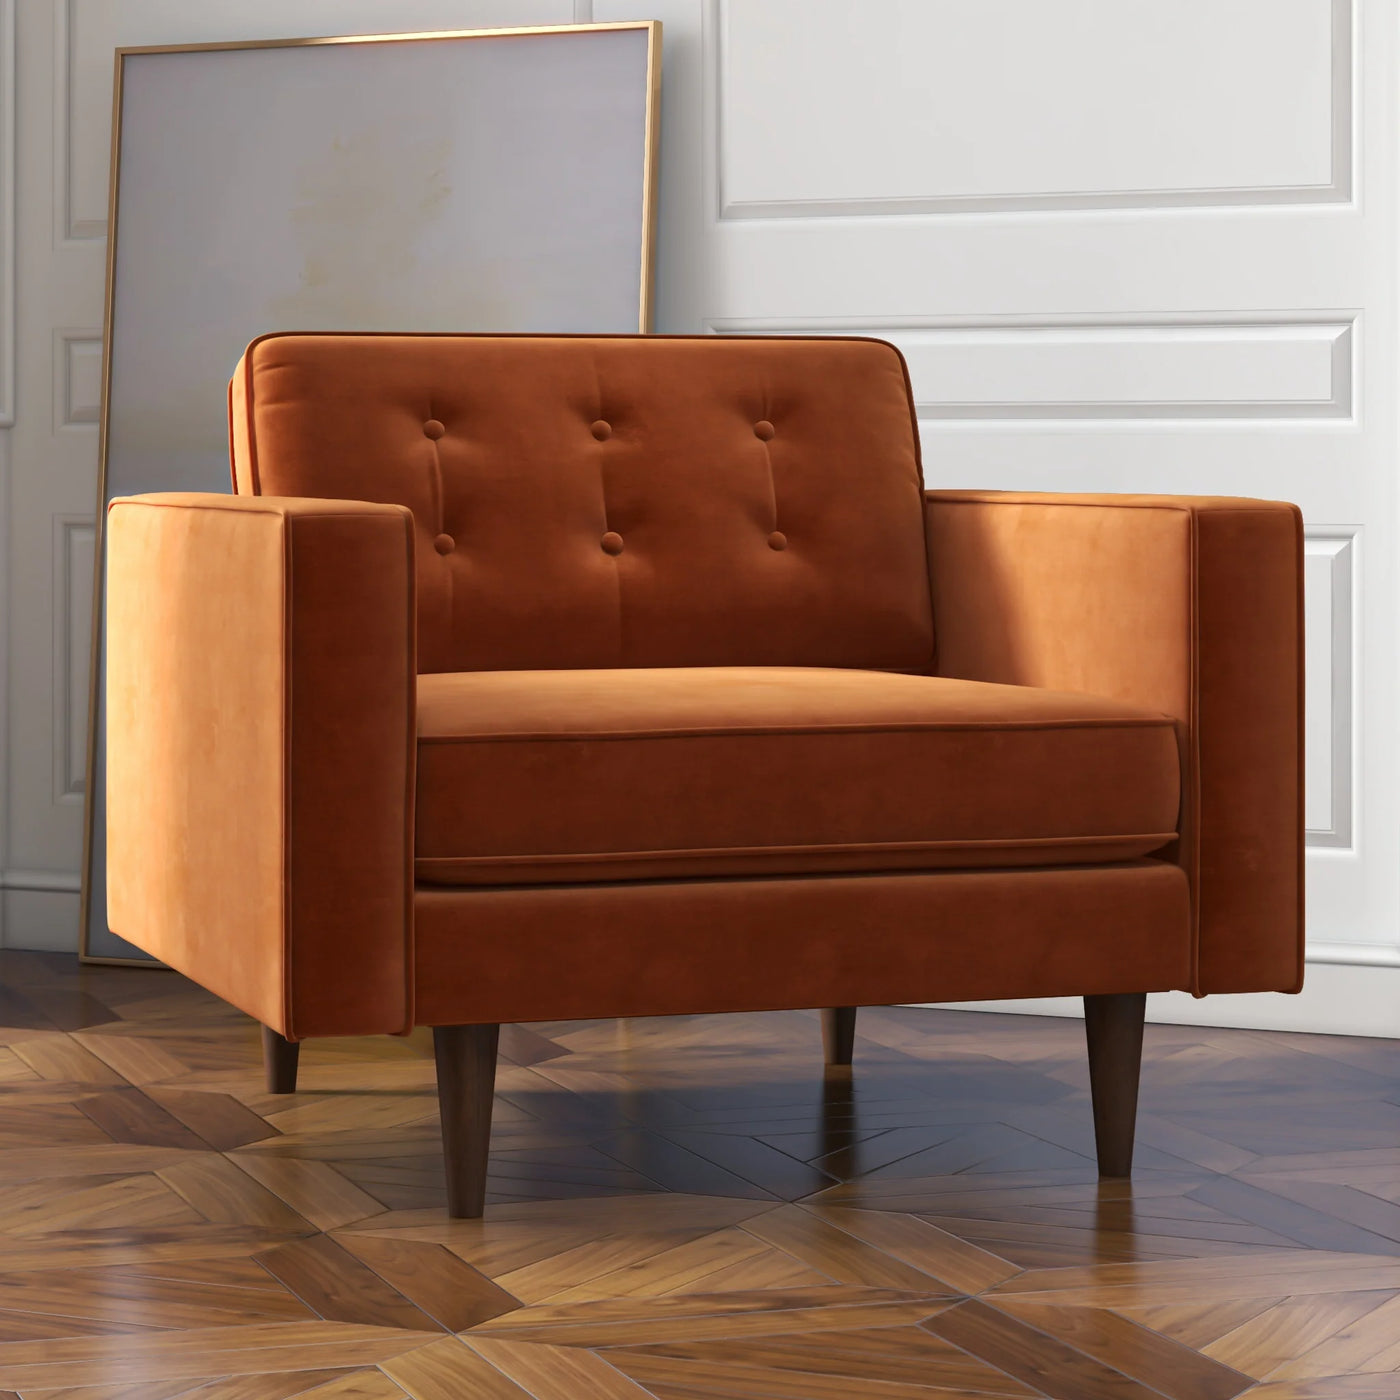 Mid-Century Modern Pillow Back Velvet Upholstered Armchair in Orange